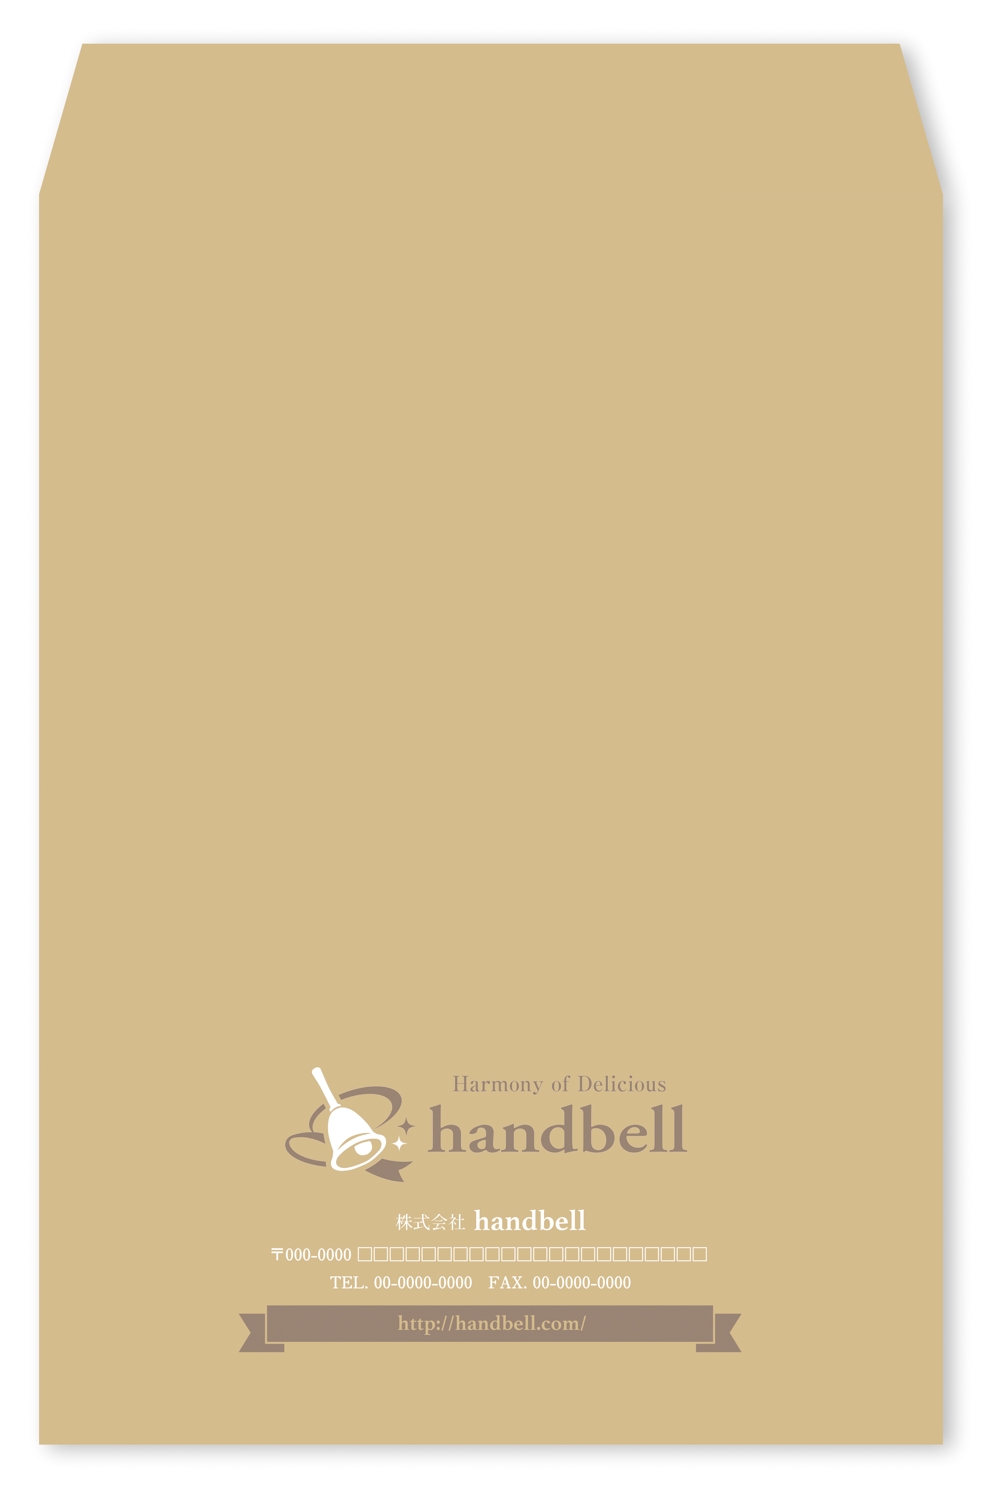 食品メーカー「handbell」の封筒デザイン（ロゴあり）